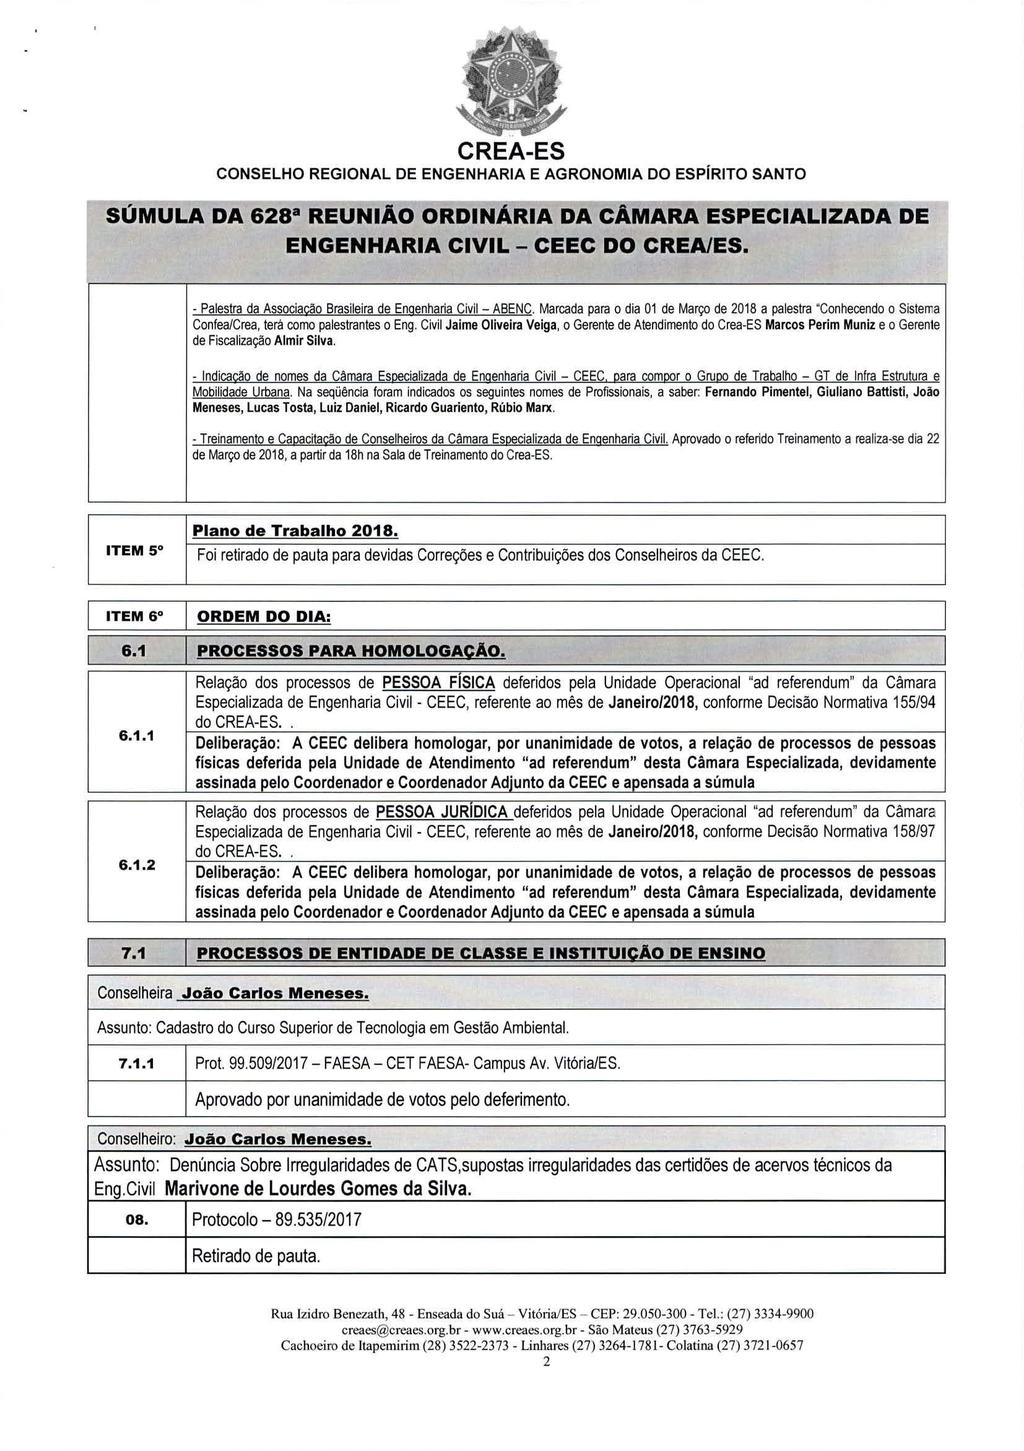 CONSELHO REGIONAL DE ENGENHARIA E AGRONOMIA DO ESPÍRITO SANTO - Palestra da Associação Brasileira de Engenharia Civil ABENC.